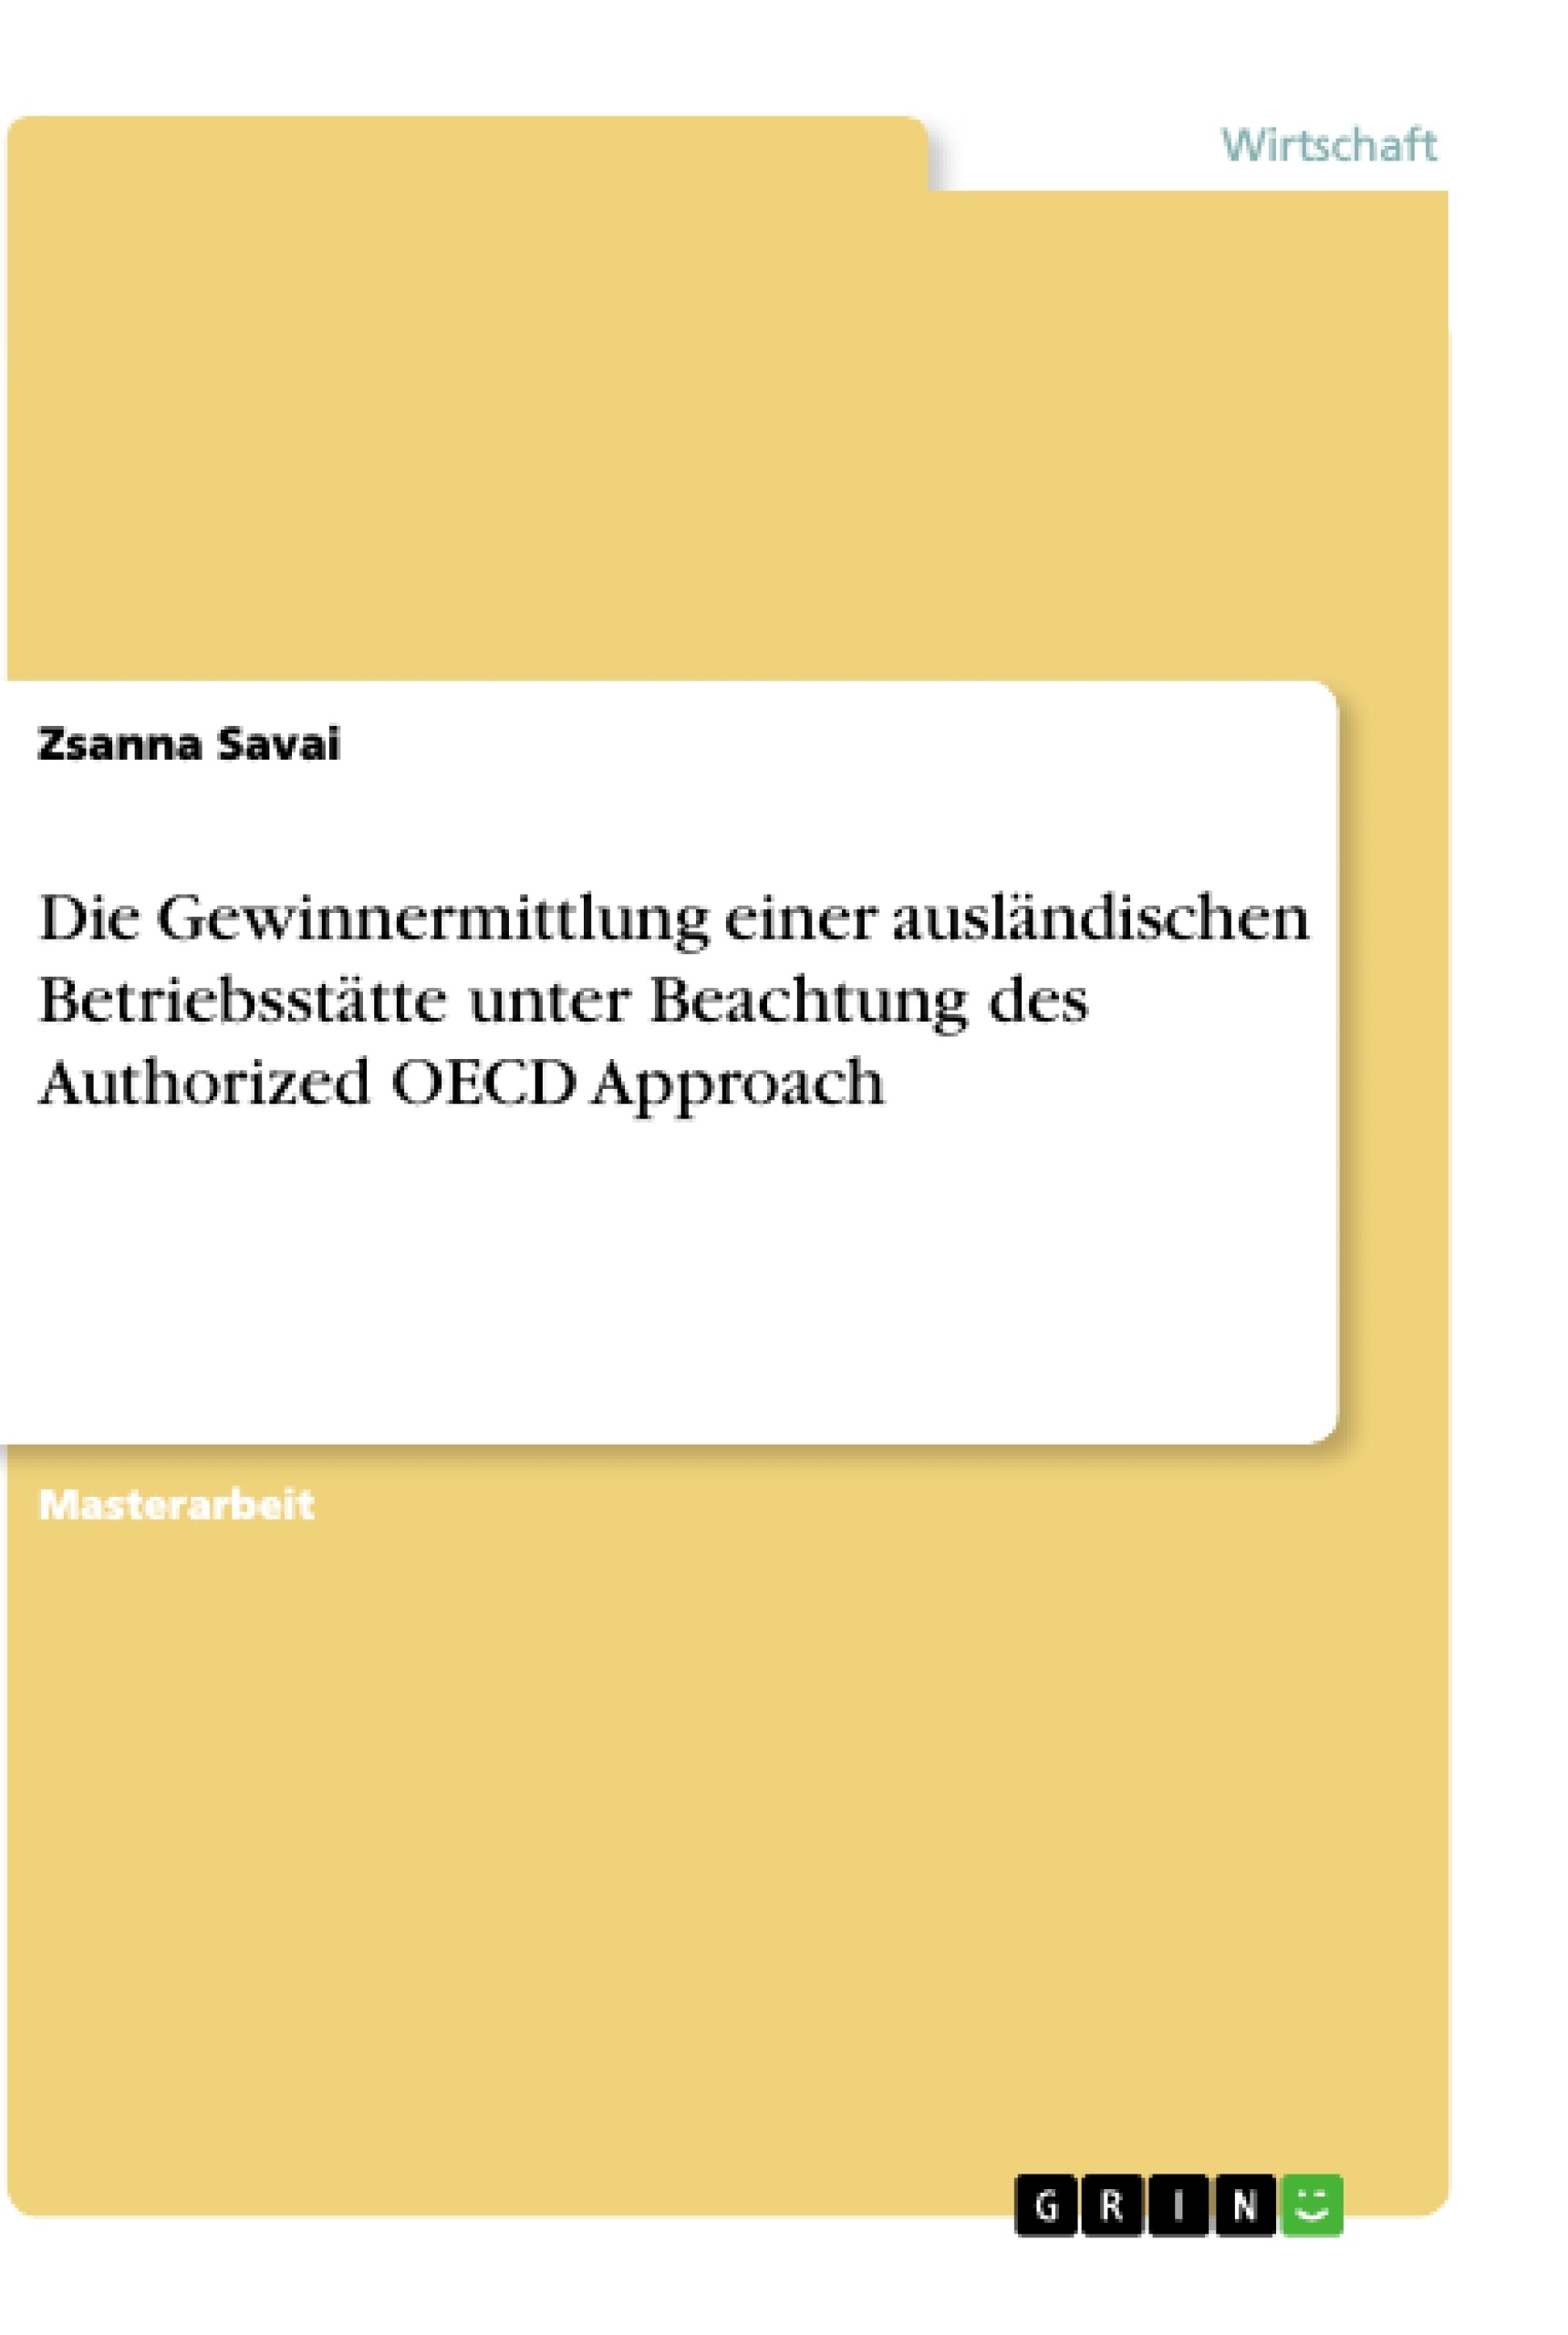 Title: Die Gewinnermittlung einer ausländischen Betriebsstätte unter Beachtung des Authorized OECD Approach